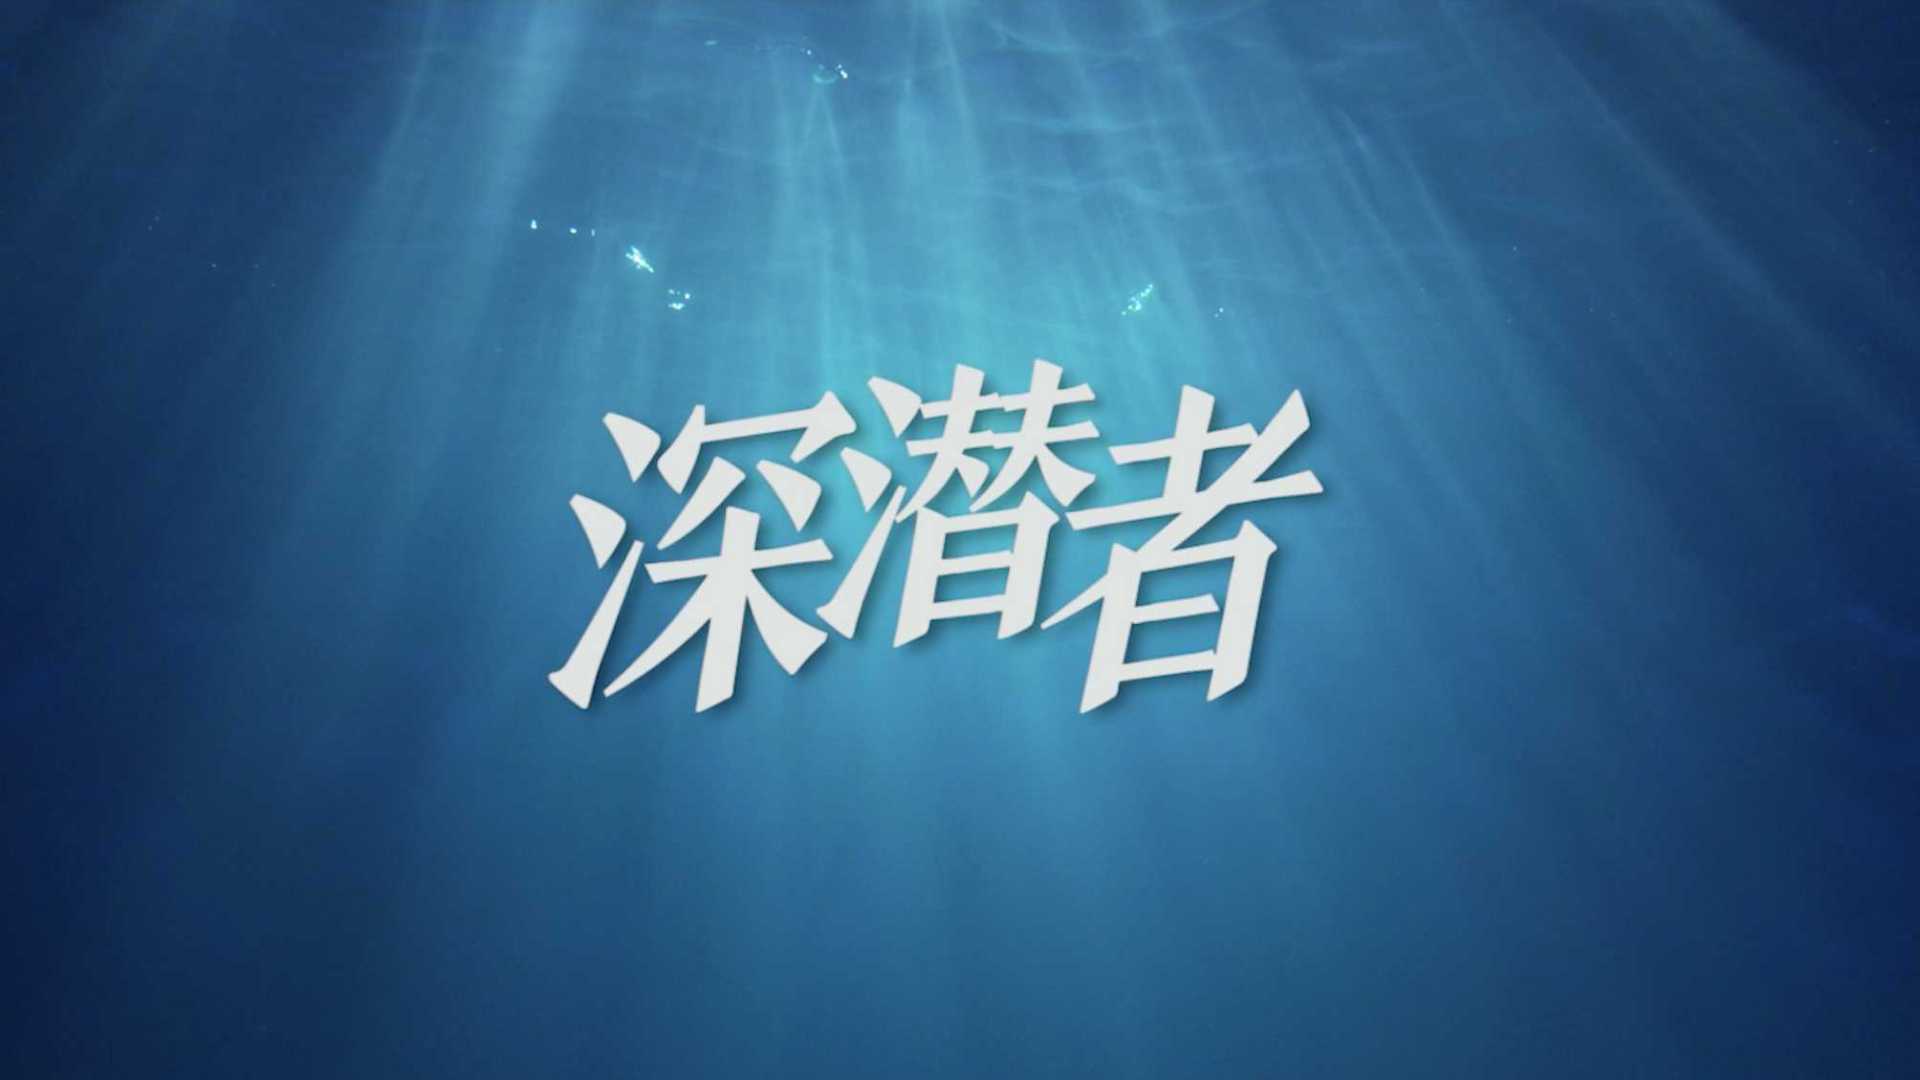 天弘高端制造基金发布宣传片《深潜者》